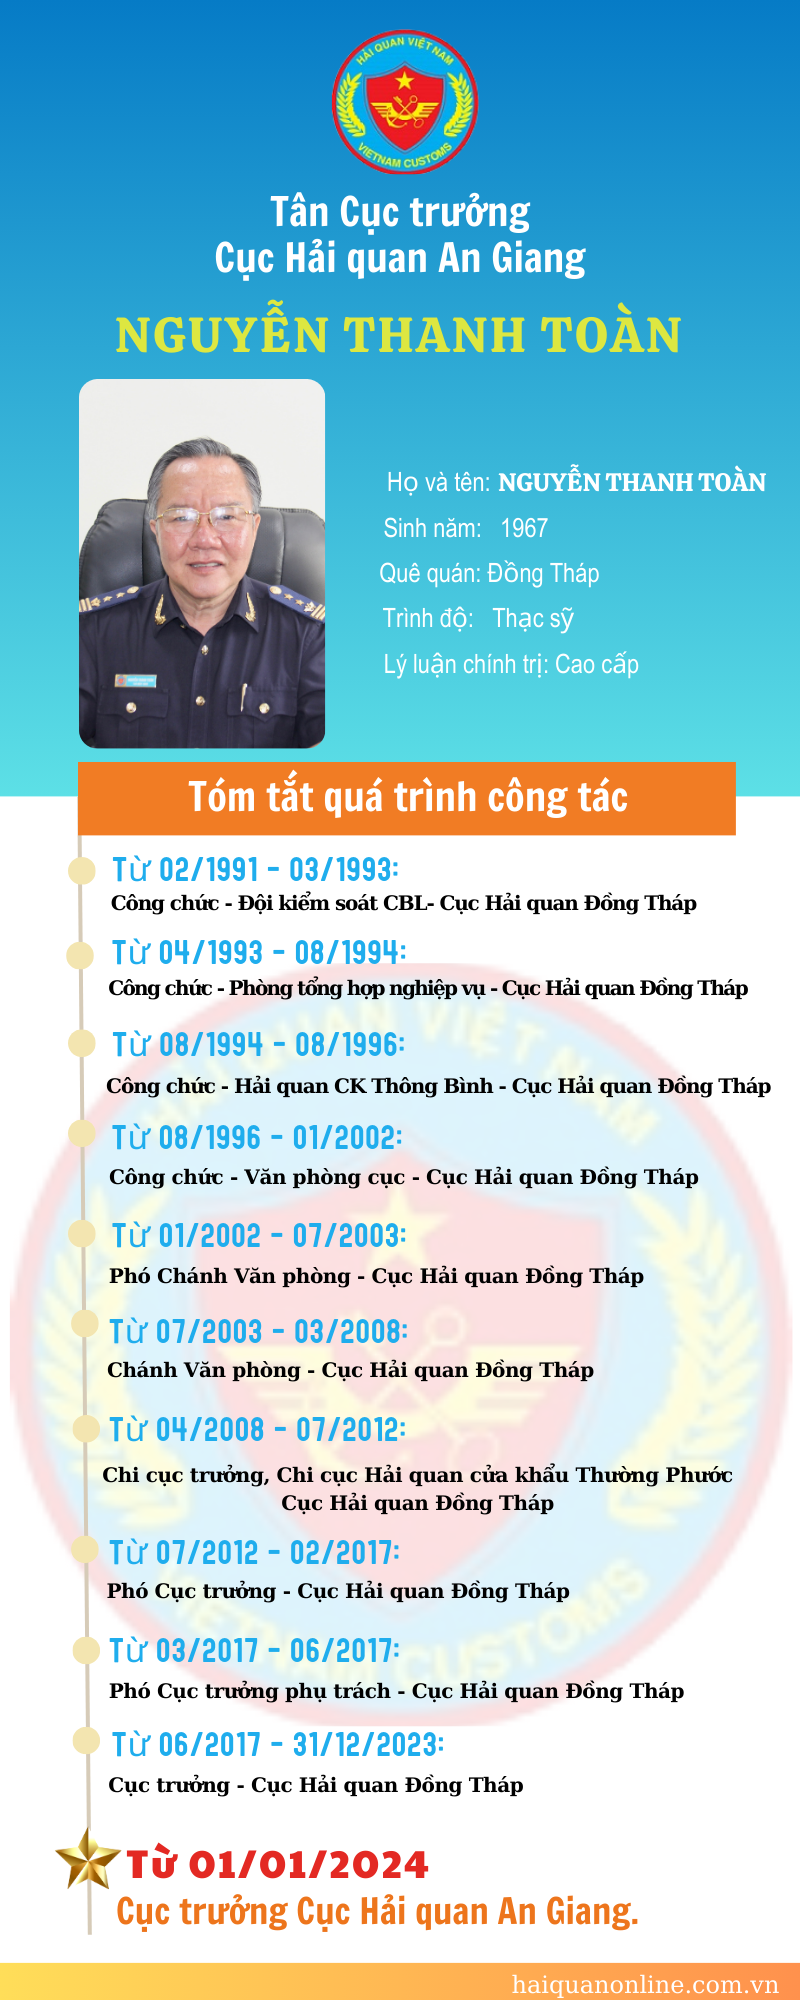 Infographics: Quá trình công tác của tân Cục trưởng Cục Hải quan An Giang Nguyễn Thanh Toàn